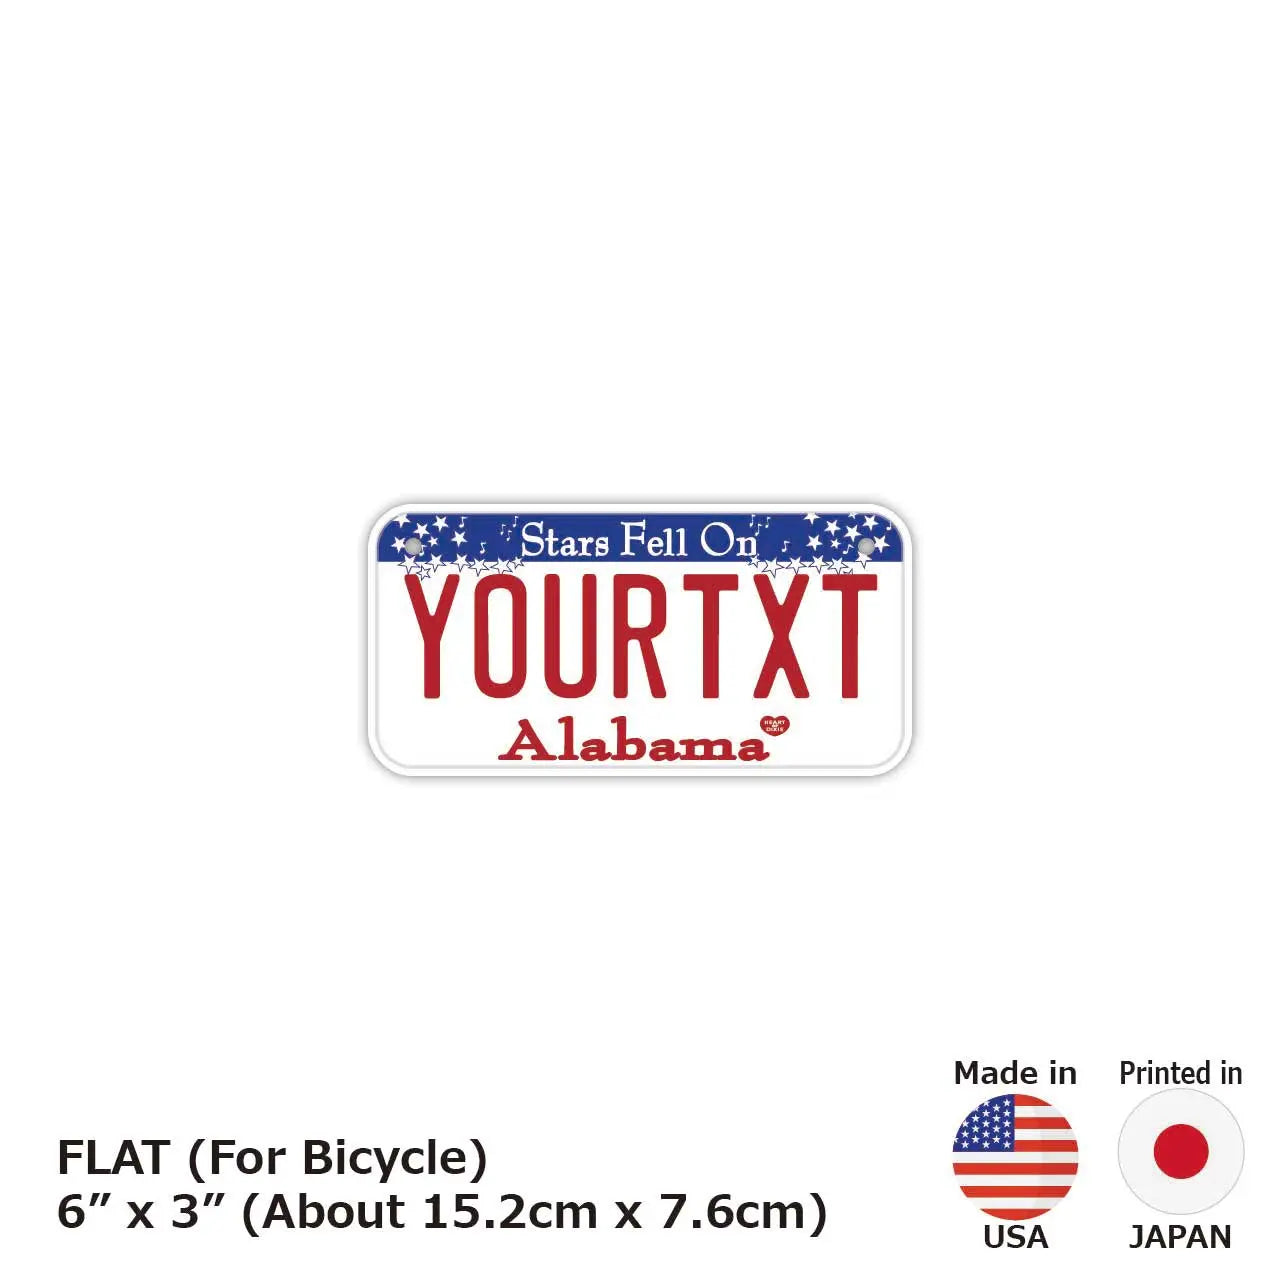 【小・自転車用】アラバマ/オリジナルアメリカナンバープレート PL8HERO